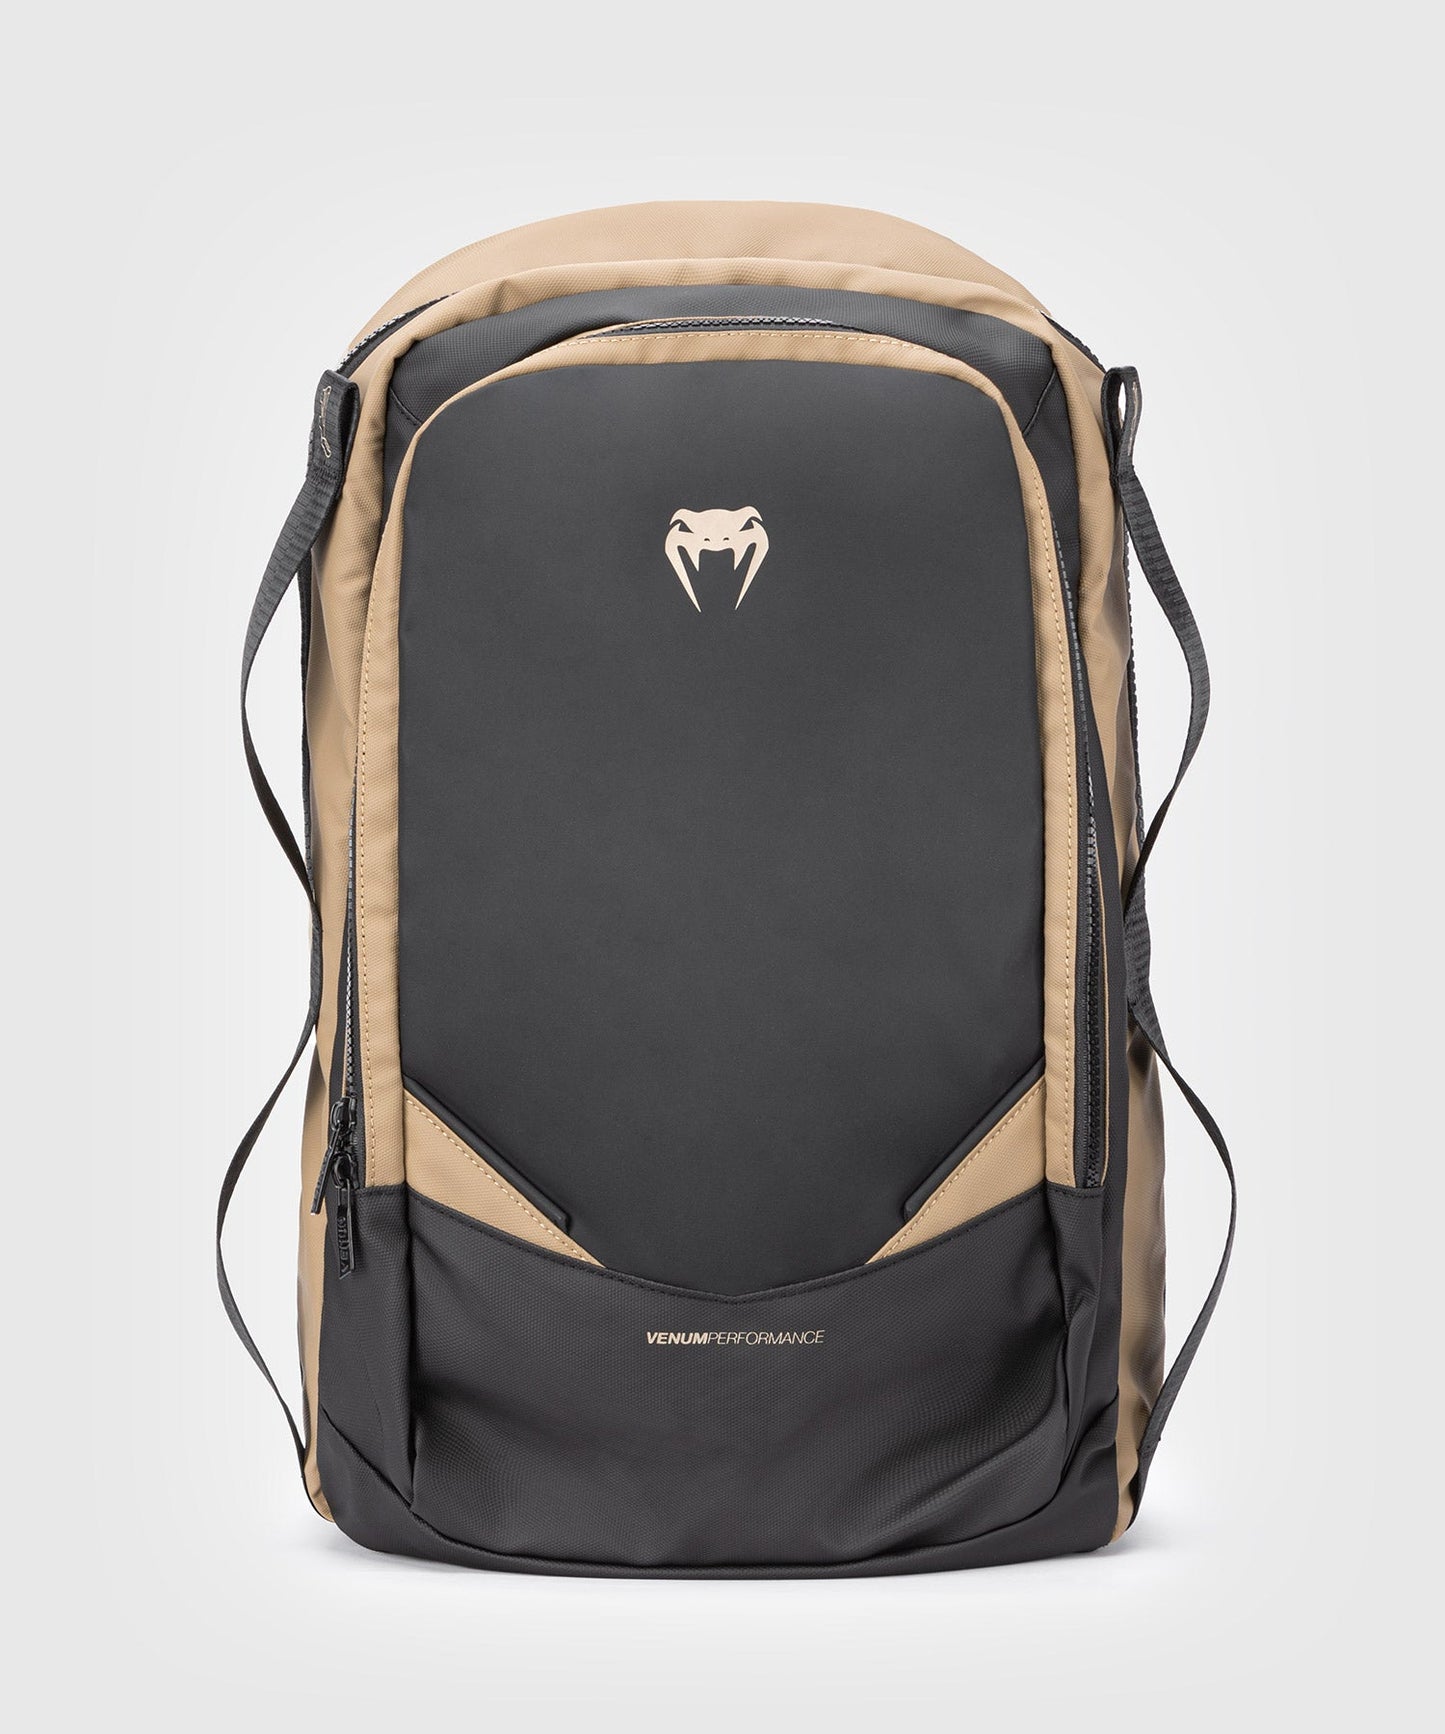 Venum Evo 2 Backpack - Black/Sand